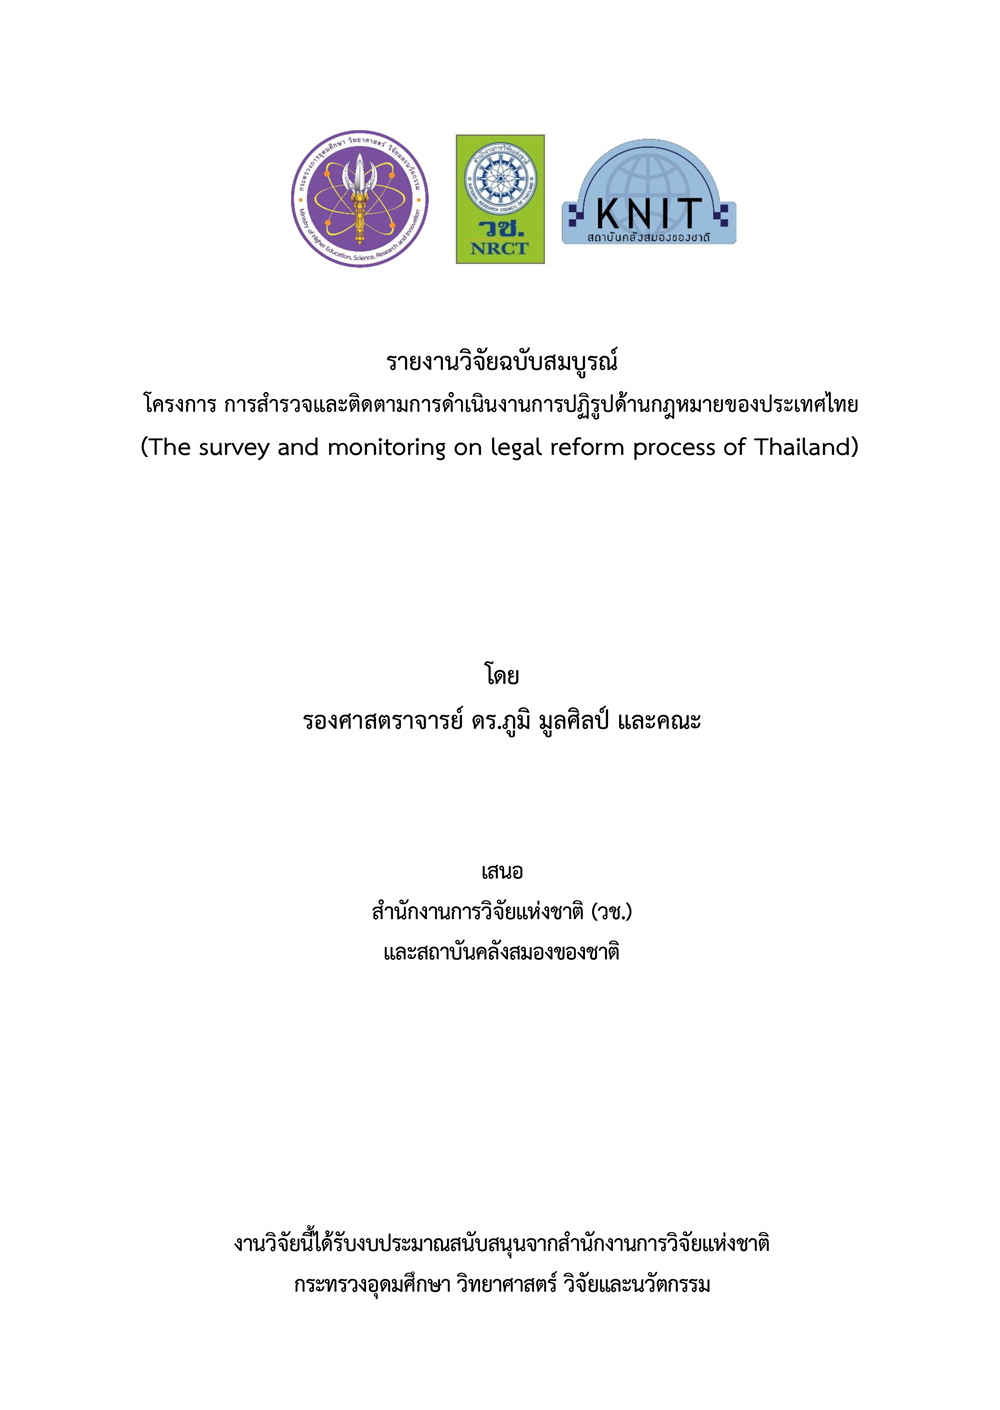 รายงานวิจัยฉบับสมบูรณ์ โครงการ การสารวจและติดตามการดาเนินงานการปฏิรูปด้านกฎหมายของประเทศไทย